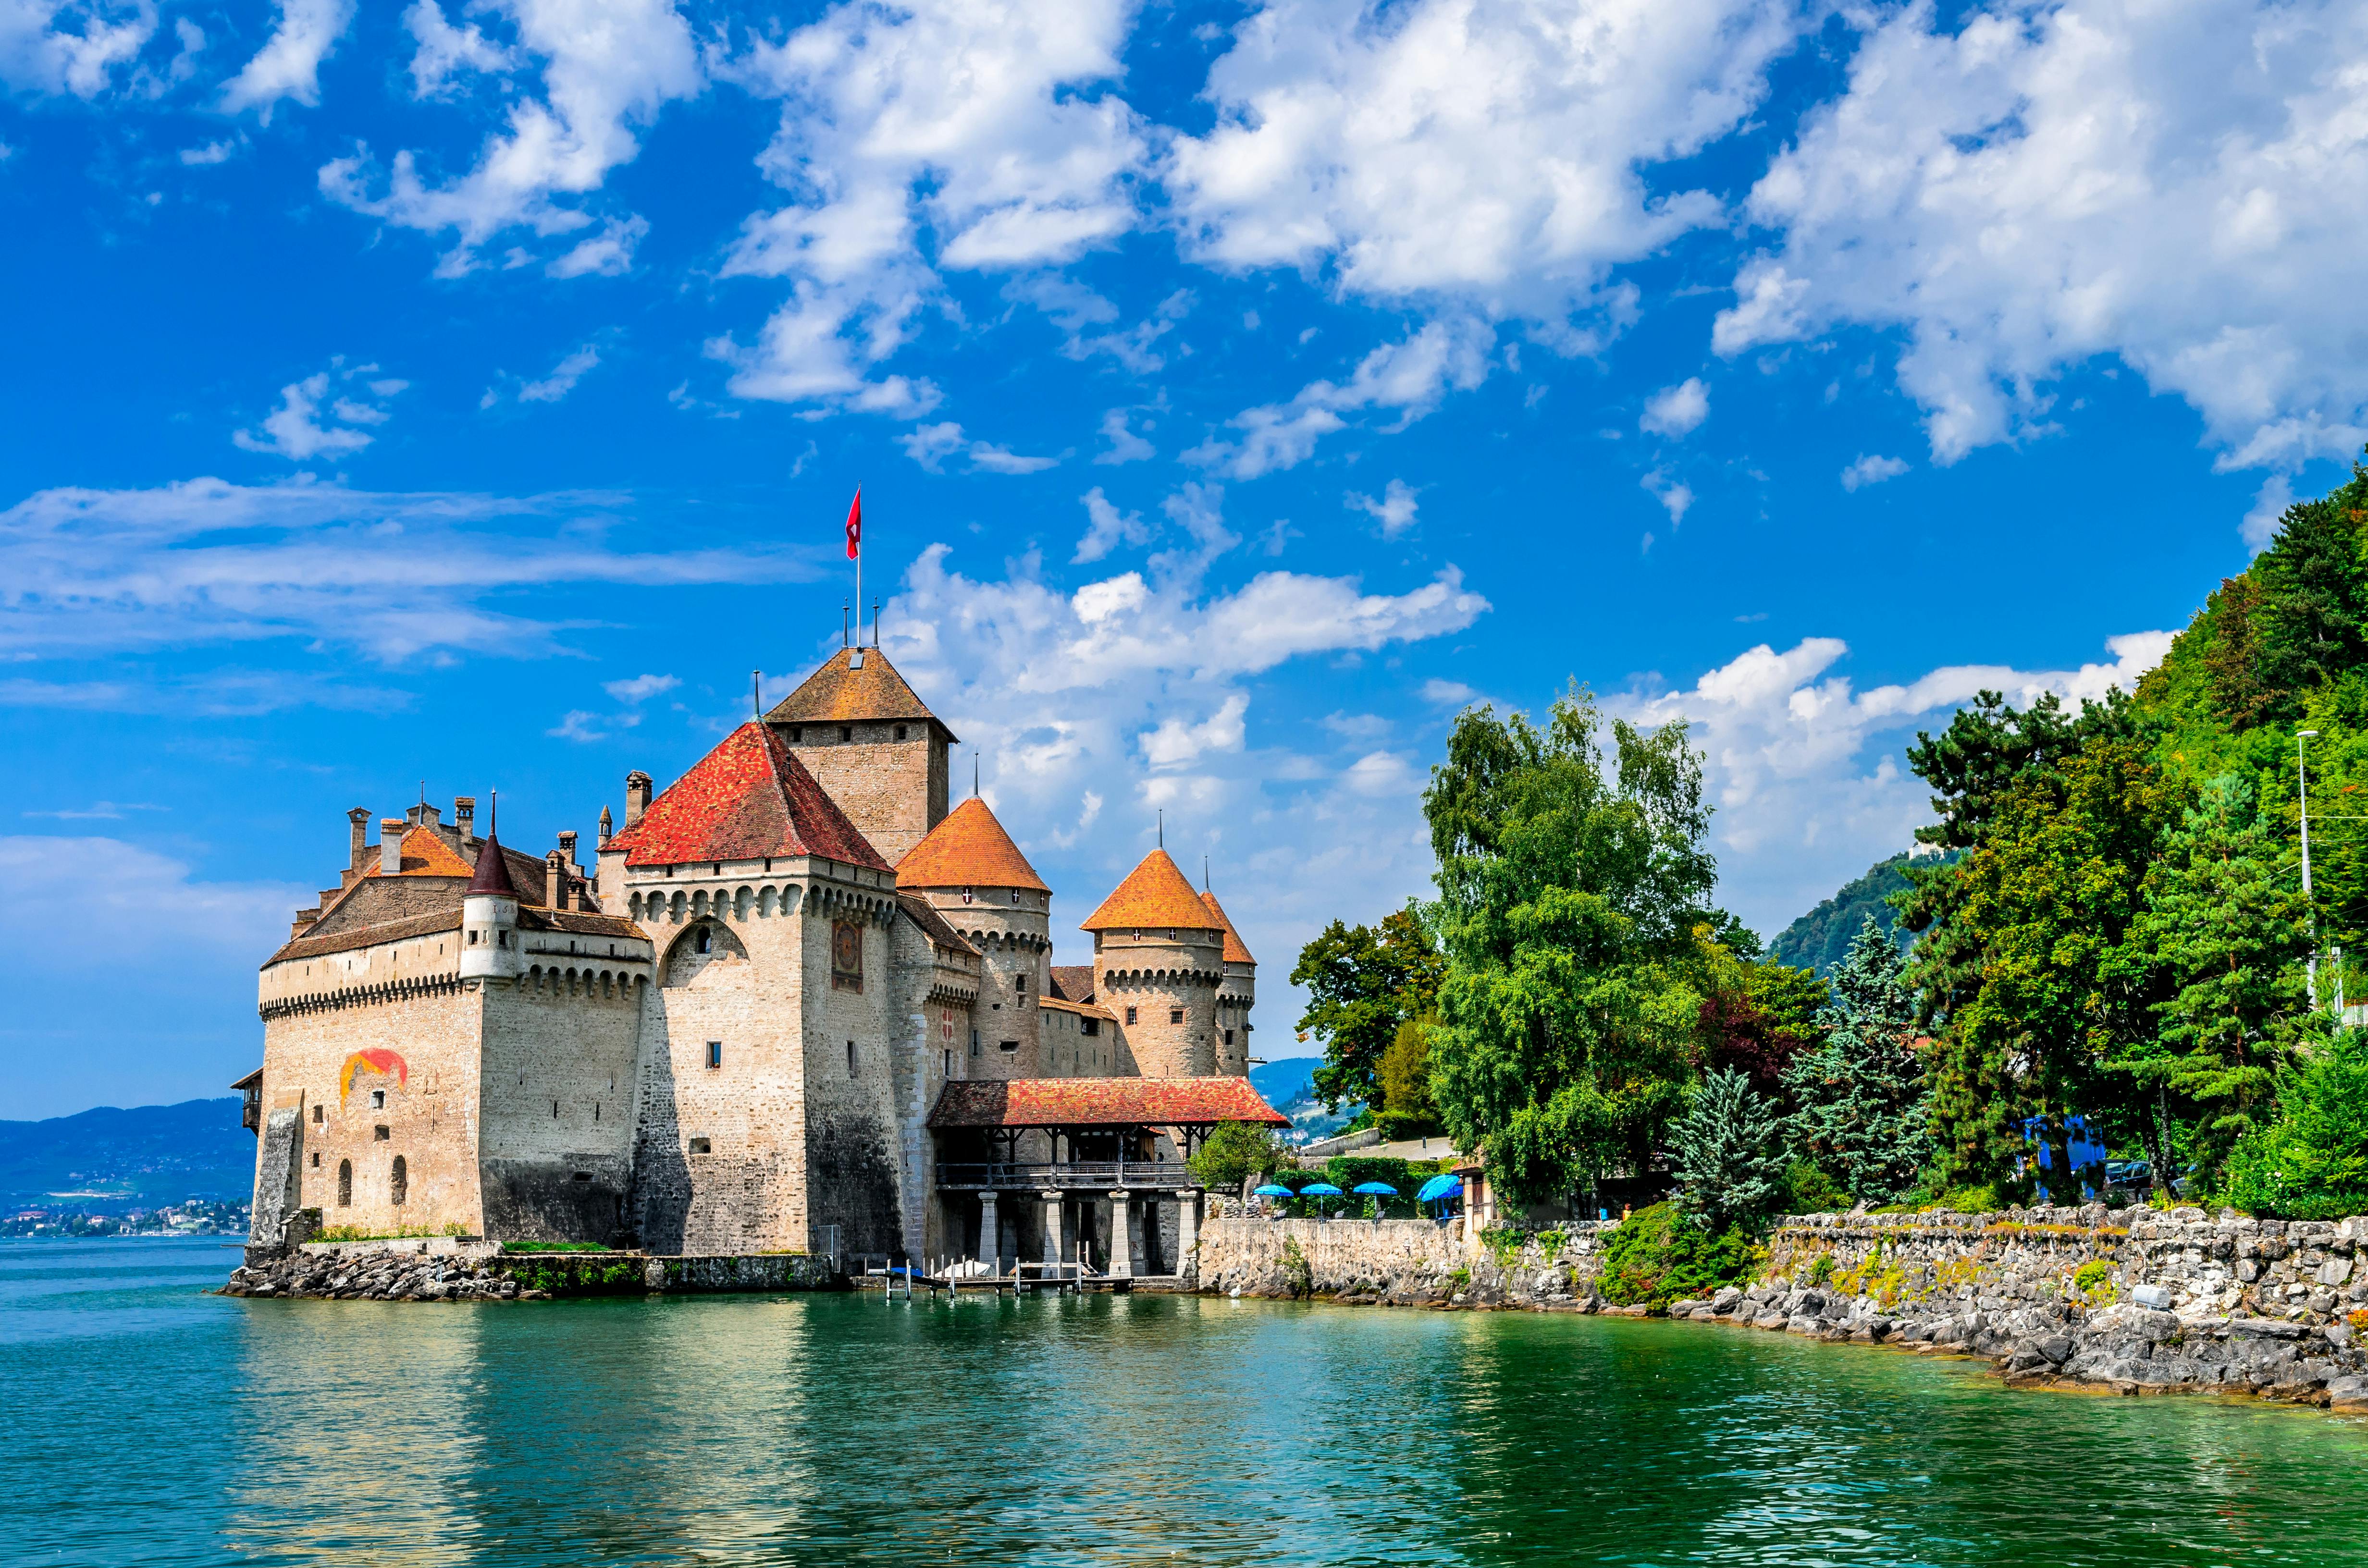 Montreux e il castello di Chillon tour di un giorno da Losanna in autobus